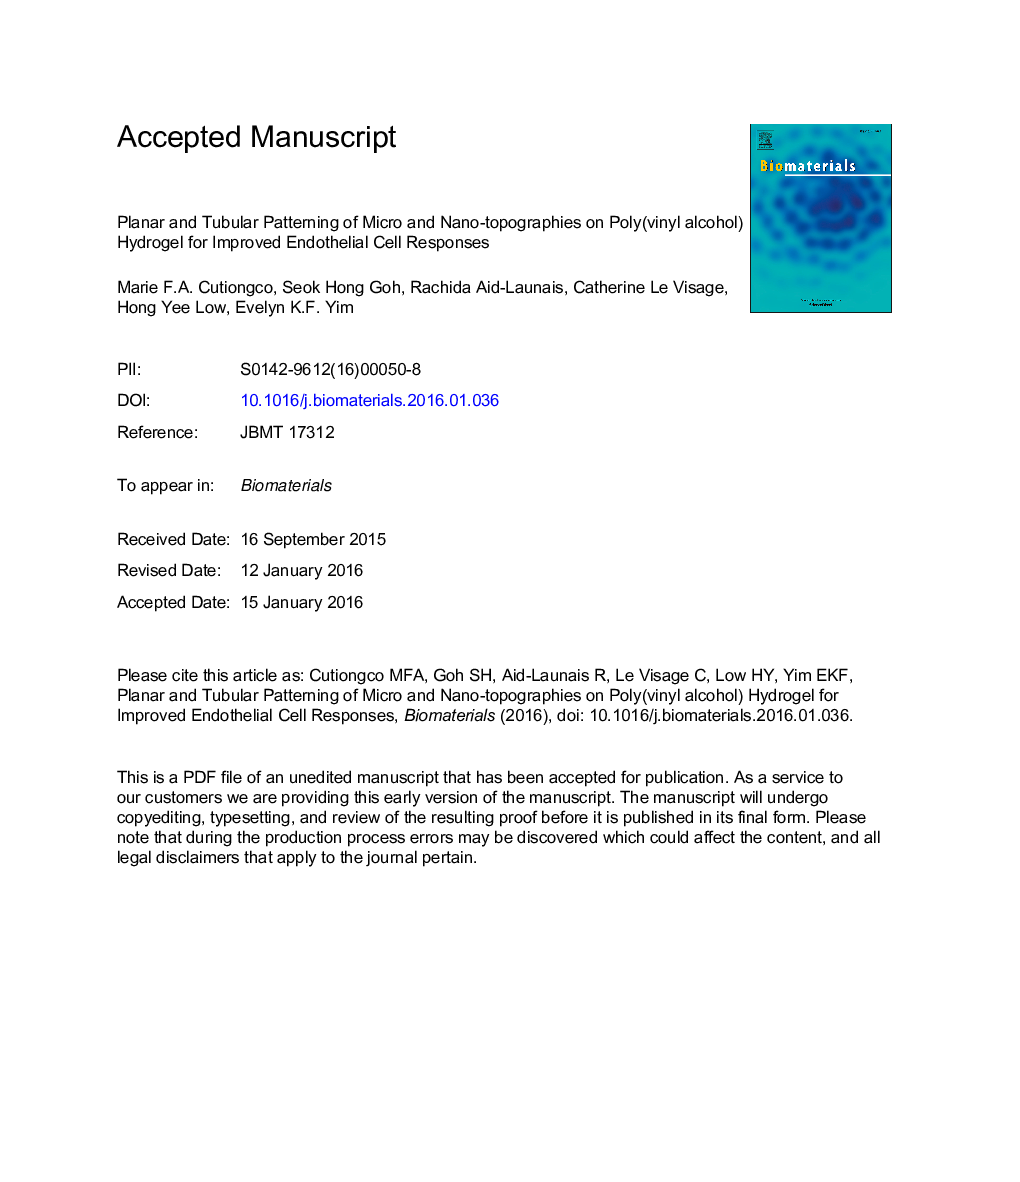 الگوی پلانار و لوله ای میکرو و نانو توپوگرافی در هیدروژل پلی (وینیل الکل) برای بهبود پاسخ های سلولی اندوتلیال 